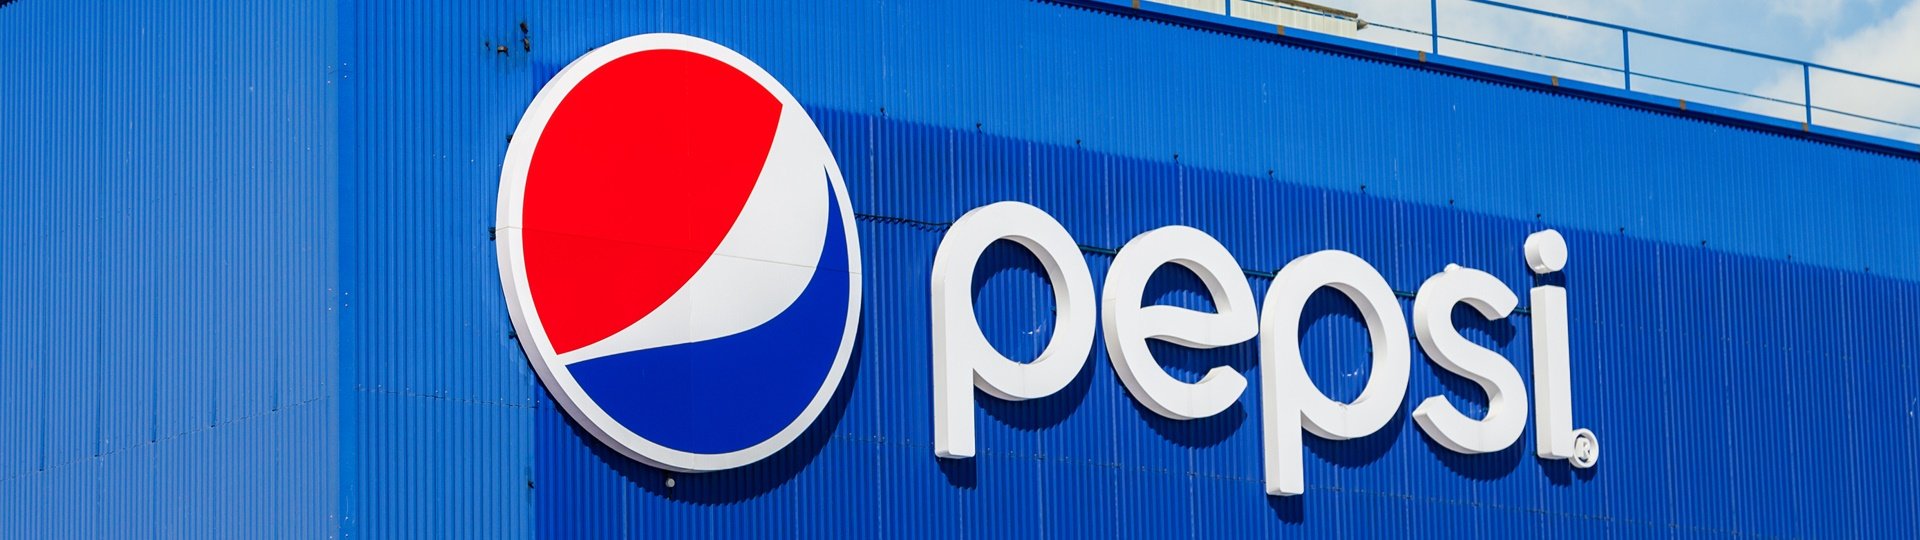 Karlovarské minerální vody (KMV) koupí PepsiCo.